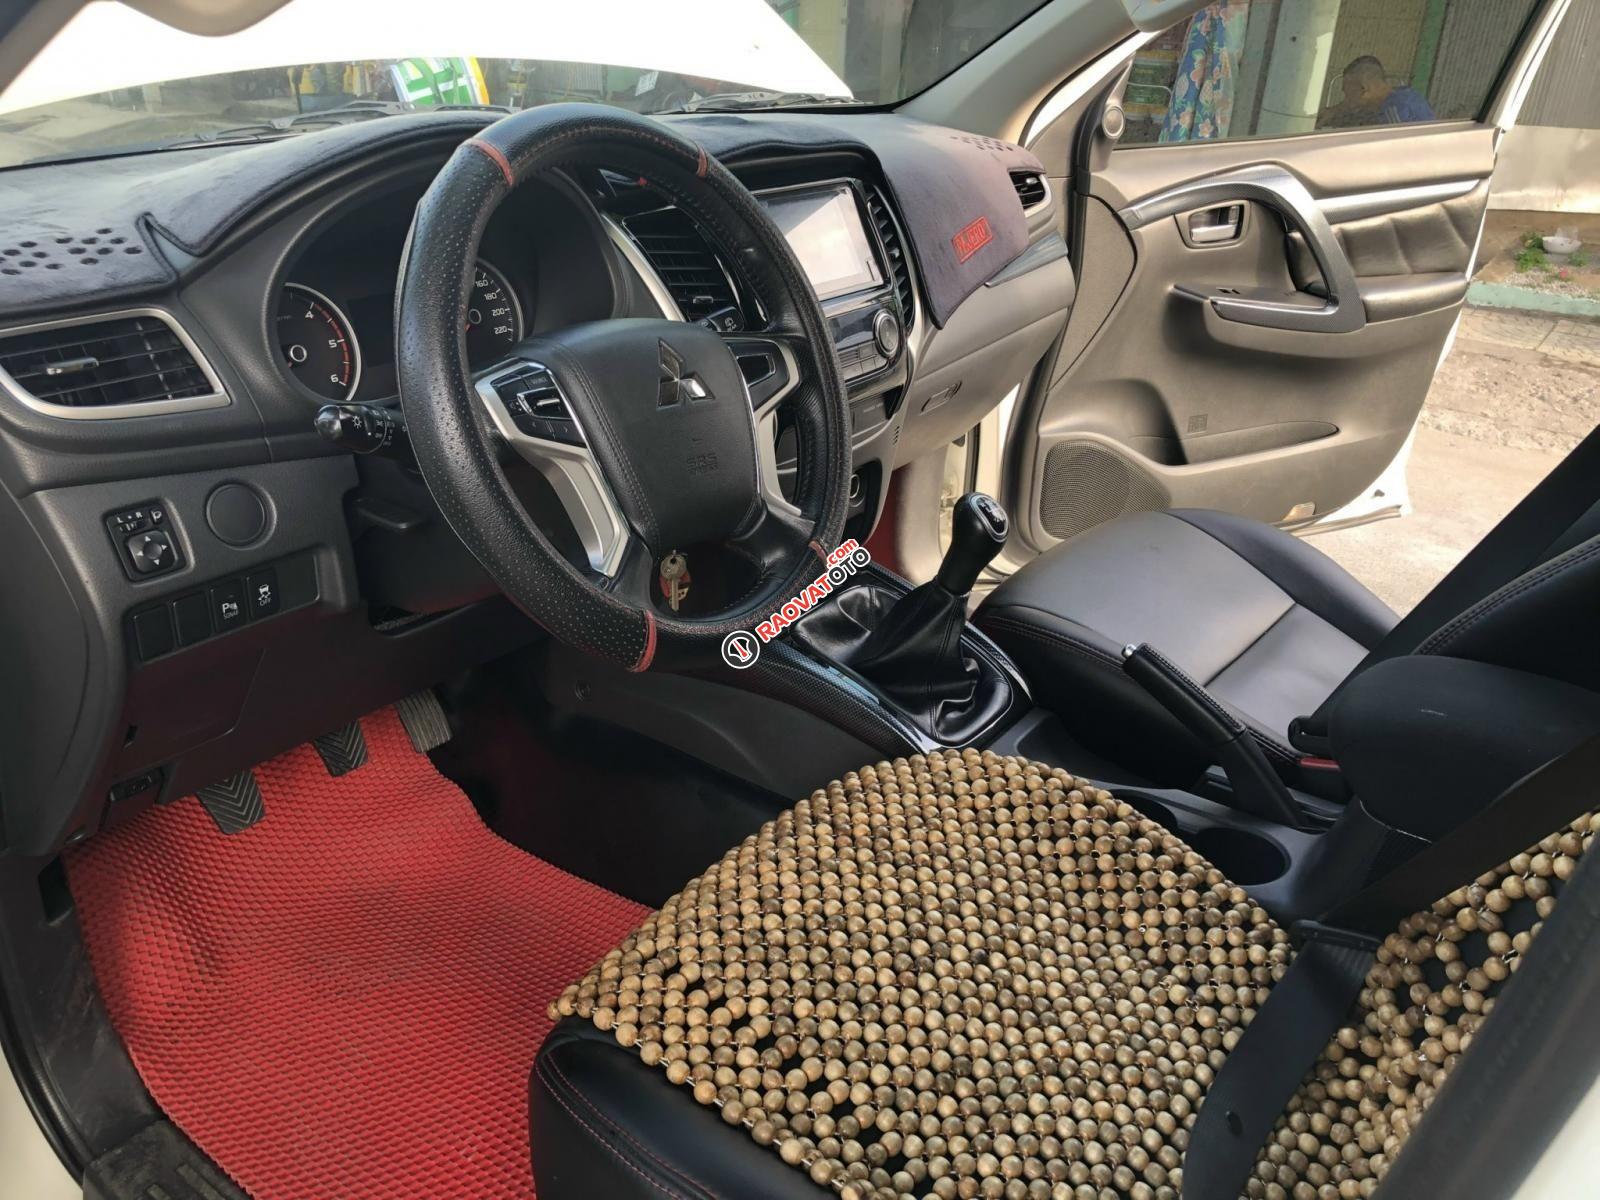 Cần bán gấp Mitsubishi Pajero sản xuất năm 2019, màu trắng, nguồn gốc rõ ràng, bao rút gốc hồ sơ, sang tên/ủy quyền vô tư-6